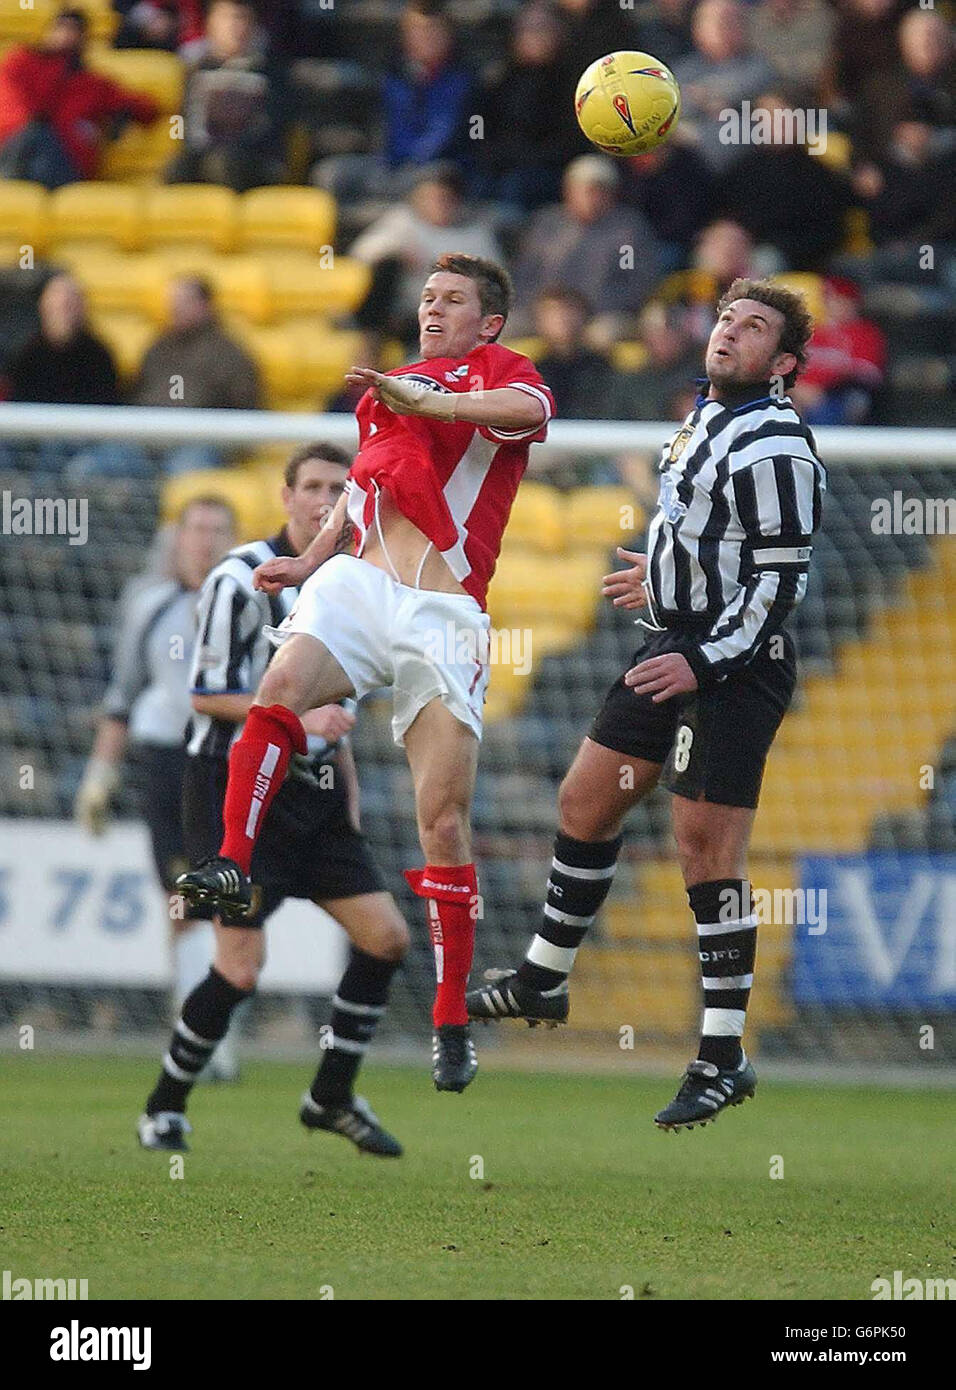 Darren Caskey von Notts County (rechts) und Swindon's Sammy Igoe springen für den Ball während des Nationwide Division Two Spiels am County Ground, Nottingham. KEINE INOFFIZIELLE CLUB-WEBSITE. Stockfoto